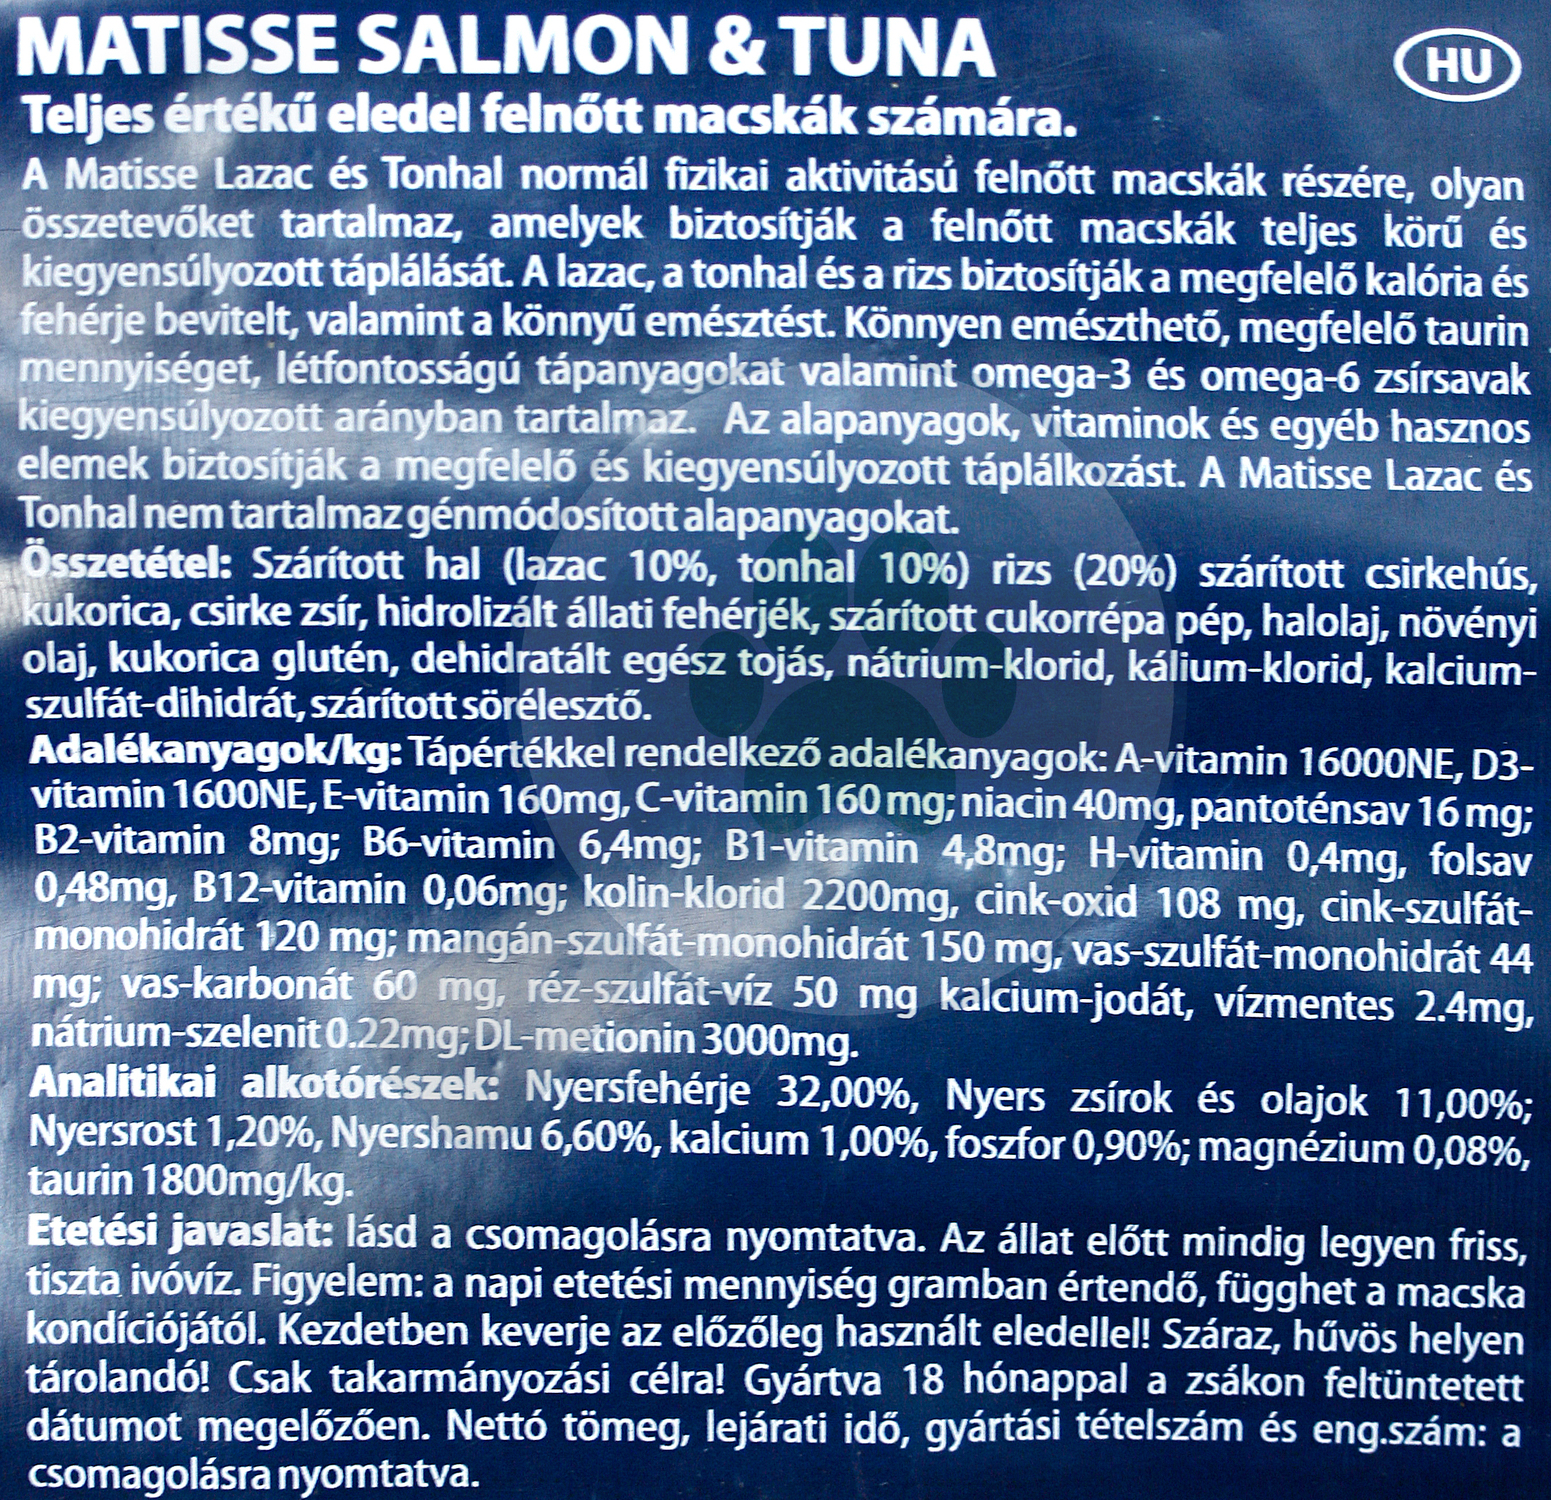 Matisse Salmon & Tuna - zoom